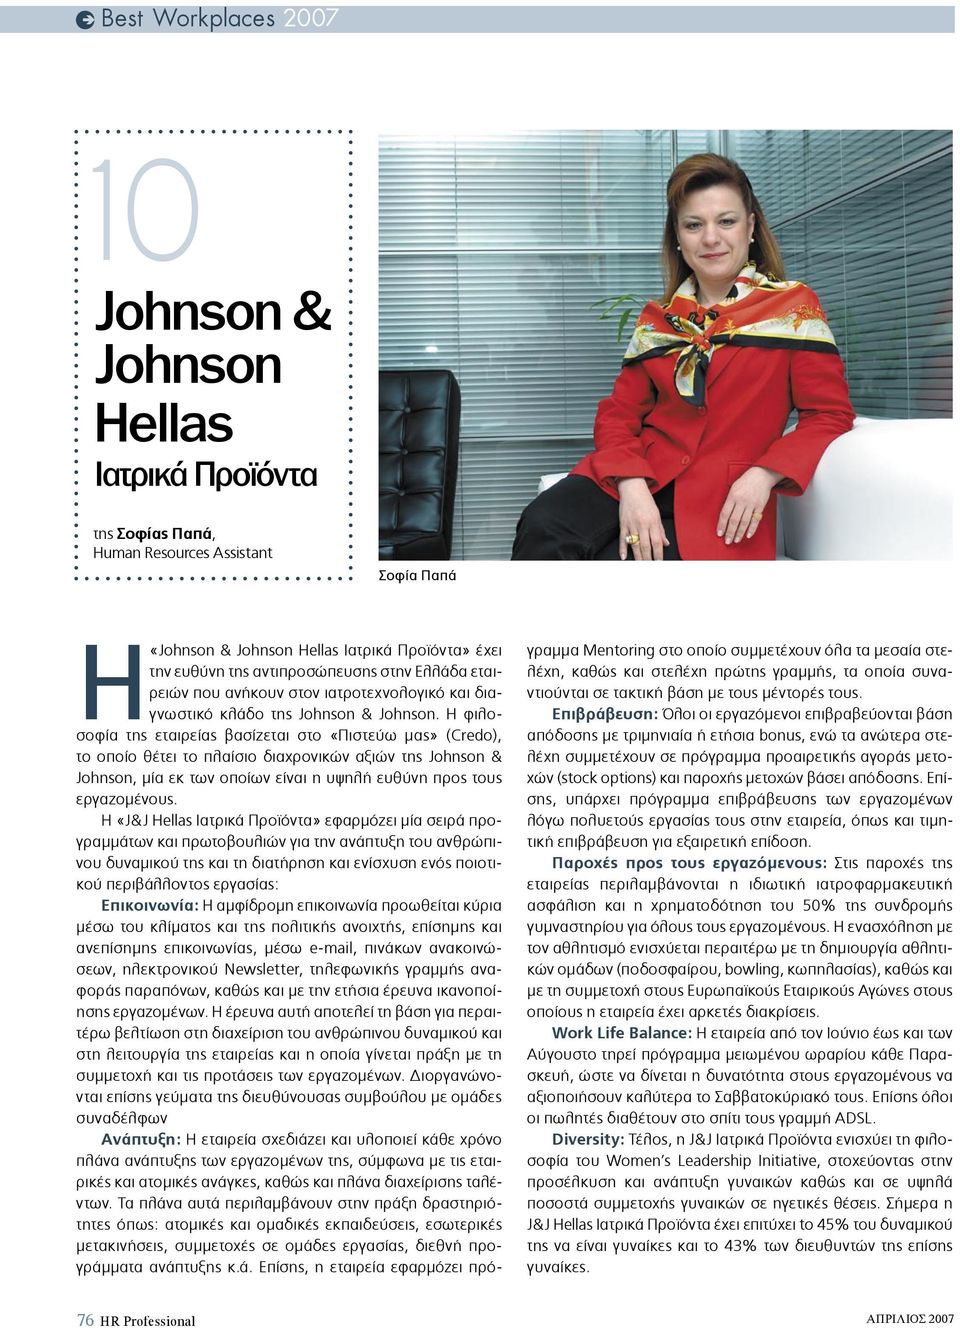 Η φιλοσοφία της εταιρείας βασίζεται στo «Πιστεύω µας» (Credo), το οποίο θέτει το πλαίσιο διαχρονικών αξιών της Johnson & Johnson, µία εκ των οποίων είναι η υψηλή ευθύνη προς τους εργαζοµένους.